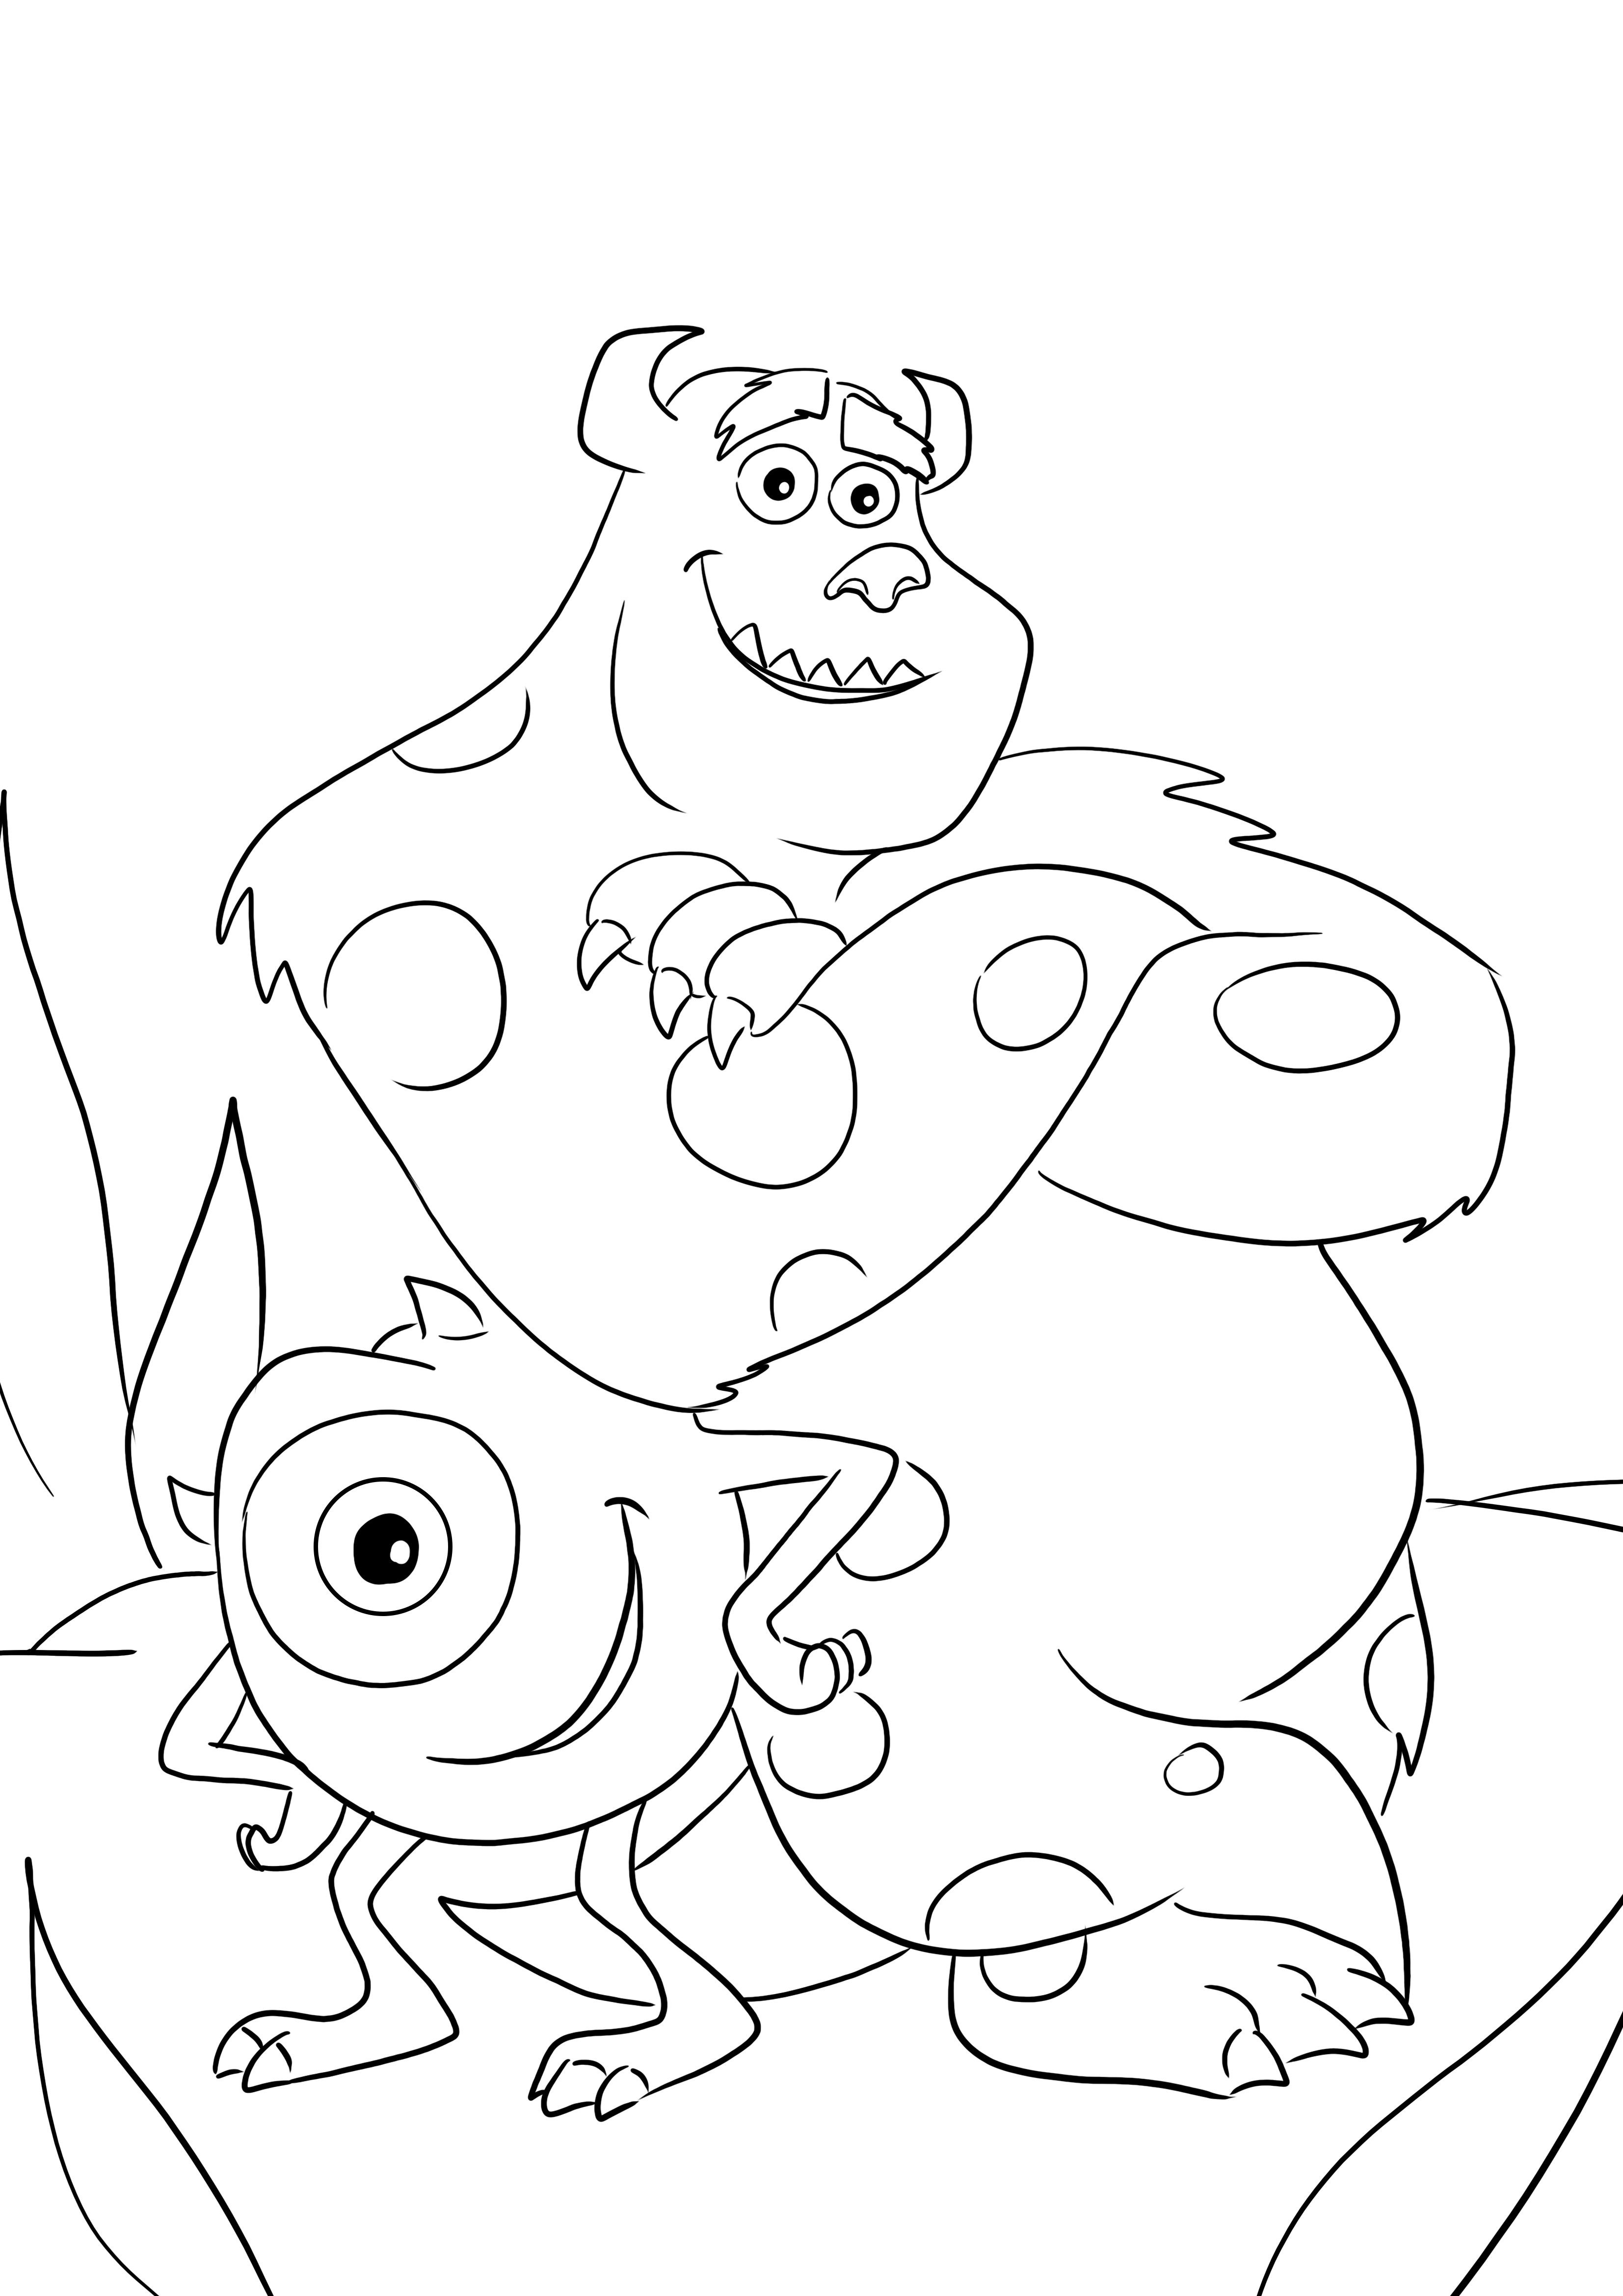 Um personagem de desenho animado do filme monsters inc.